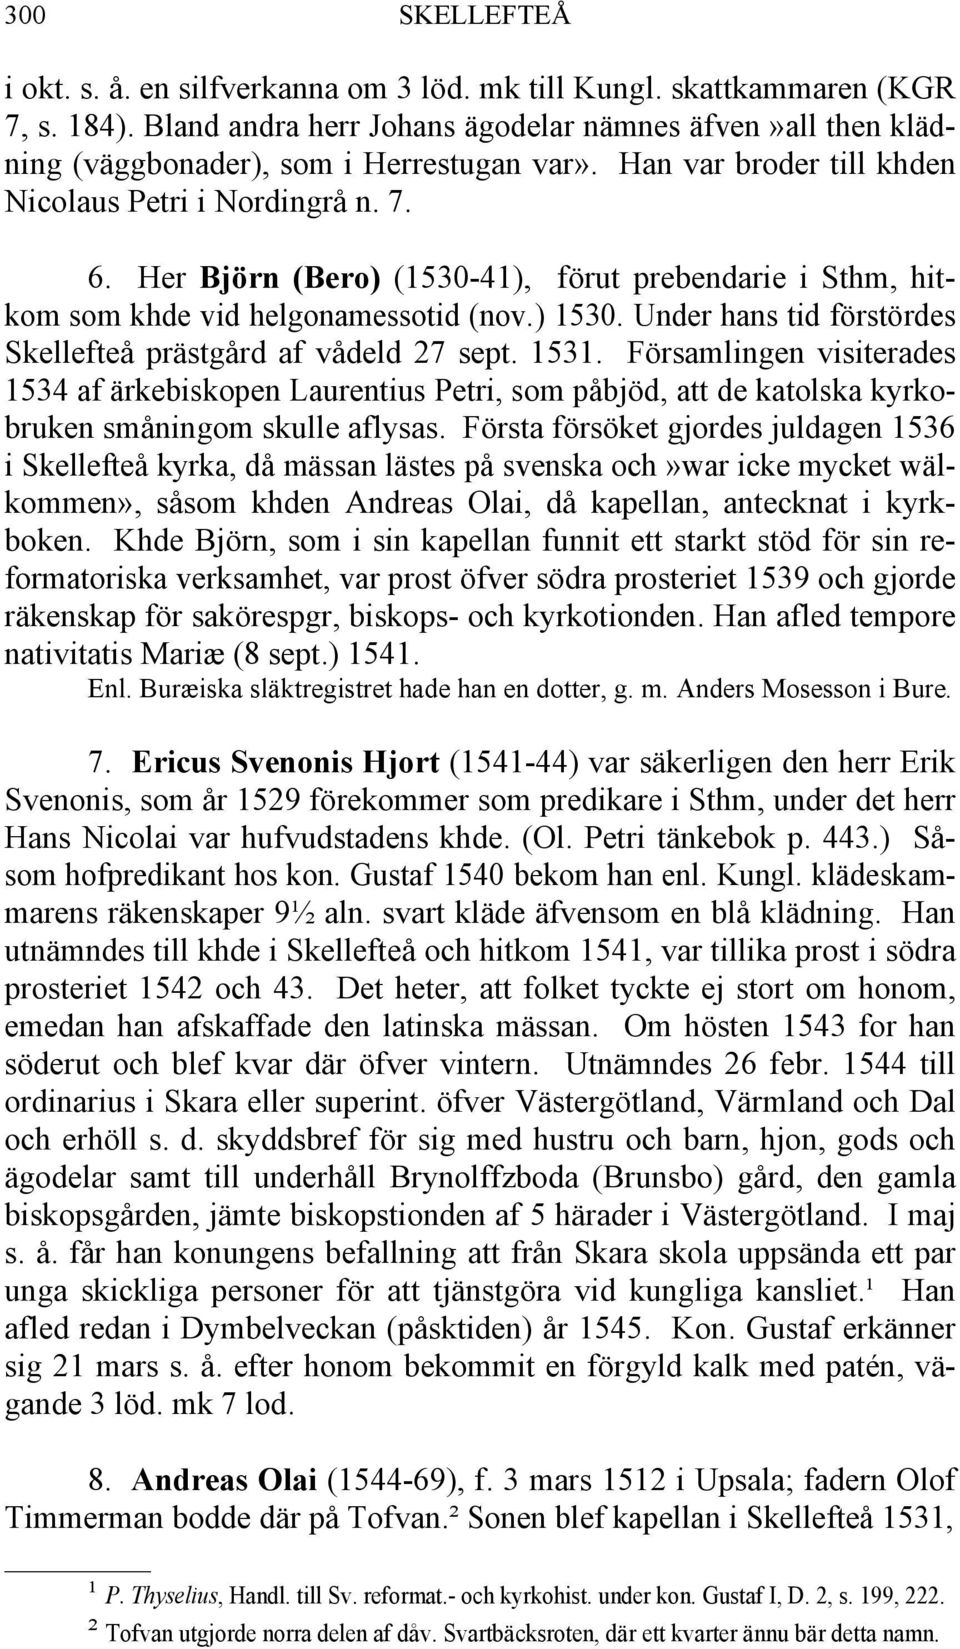 Her Björn (Bero) (1530-41), förut prebendarie i Sthm, hitkom som khde vid helgonamessotid (nov.) 1530. Under hans tid förstördes Skellefteå prästgård af vådeld 27 sept. 1531.